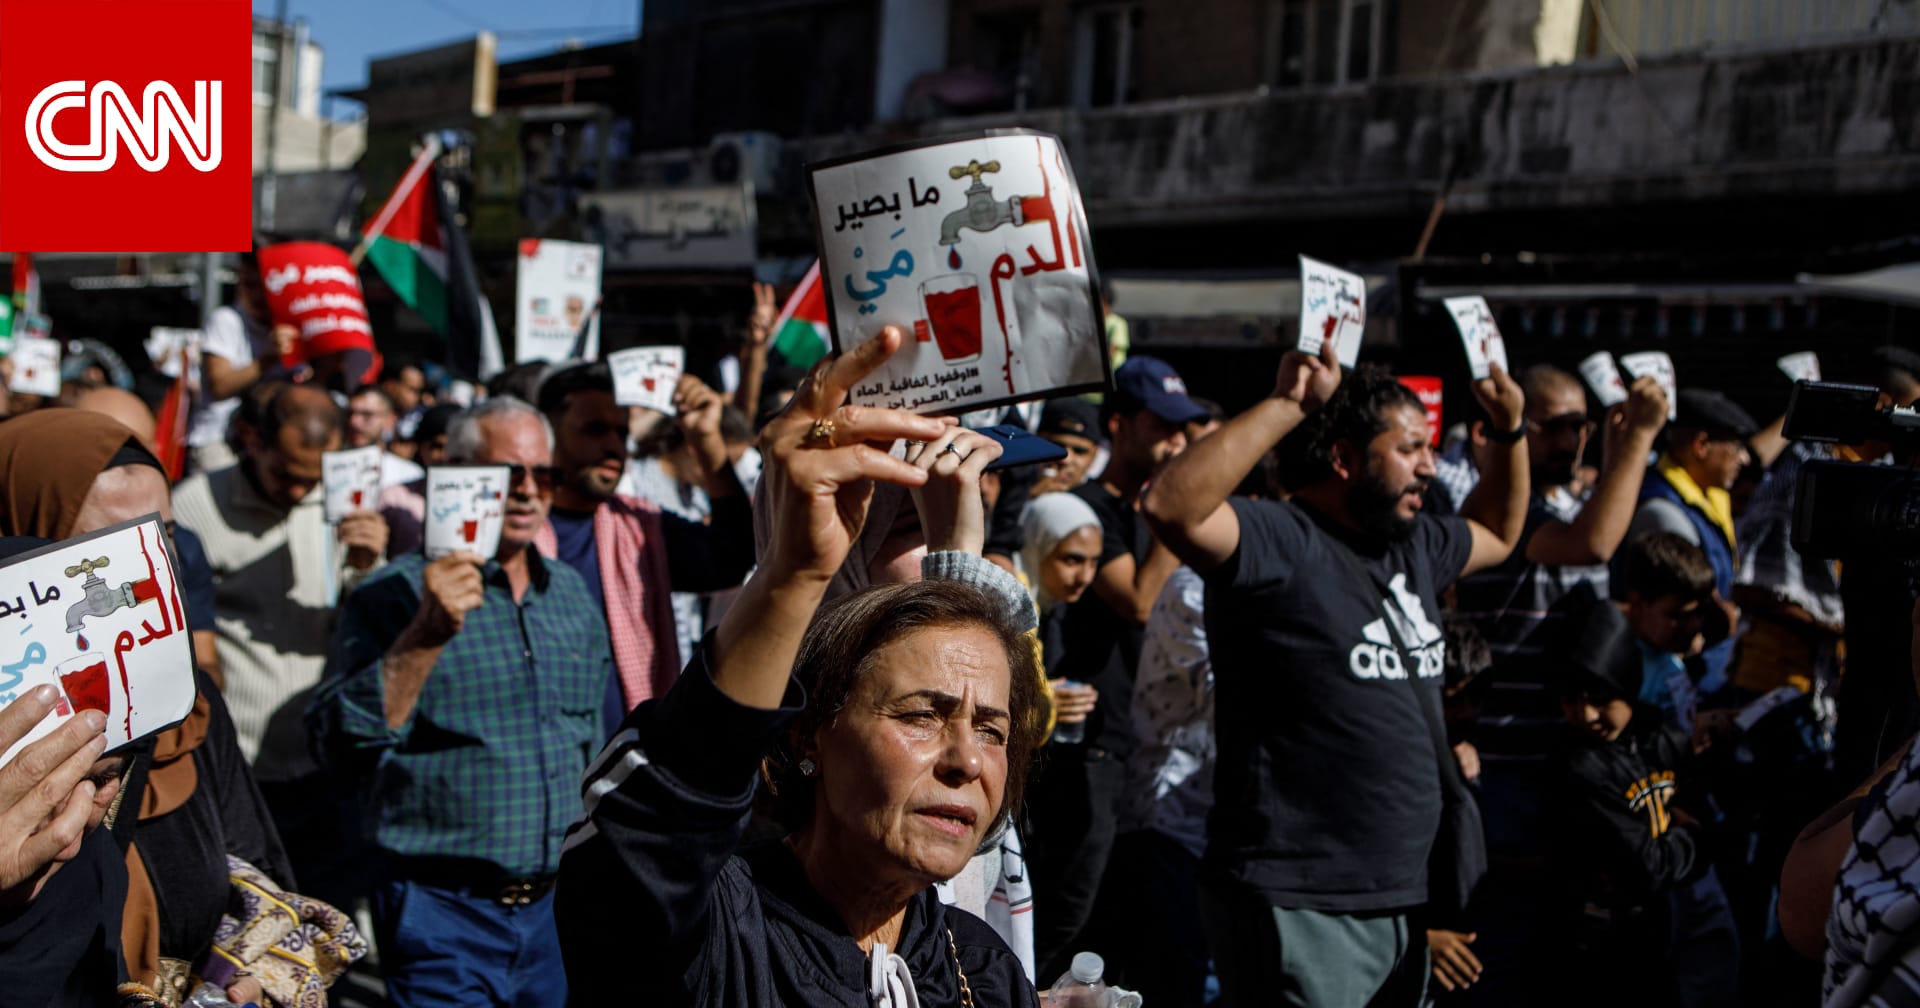 الحكومة الأردنية: تم توقيف 25 شخصا بسبب "تجاوزات" واعتداءات على الأمن والممتلكات